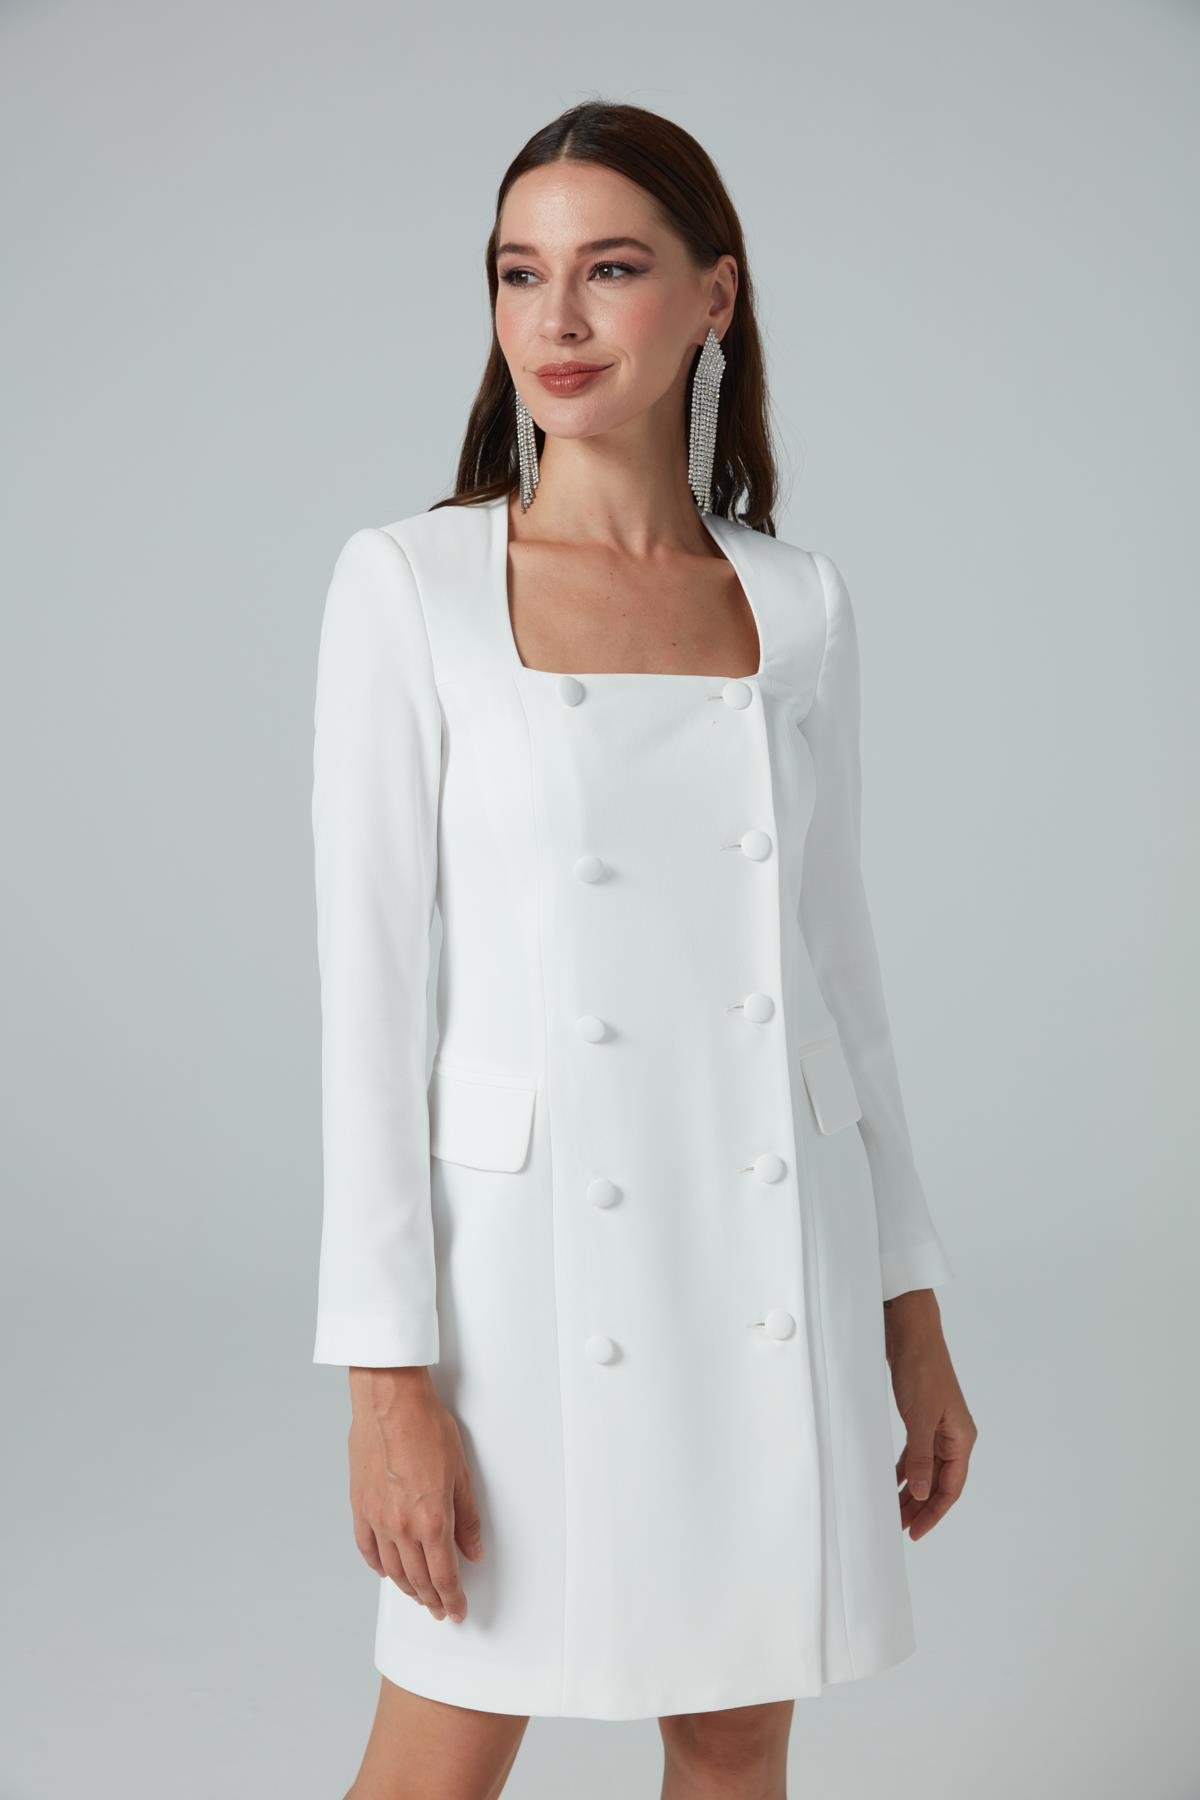 Monica Elbise Beyaz - Kare yaka ceket elbise | Elbise | Modalogy